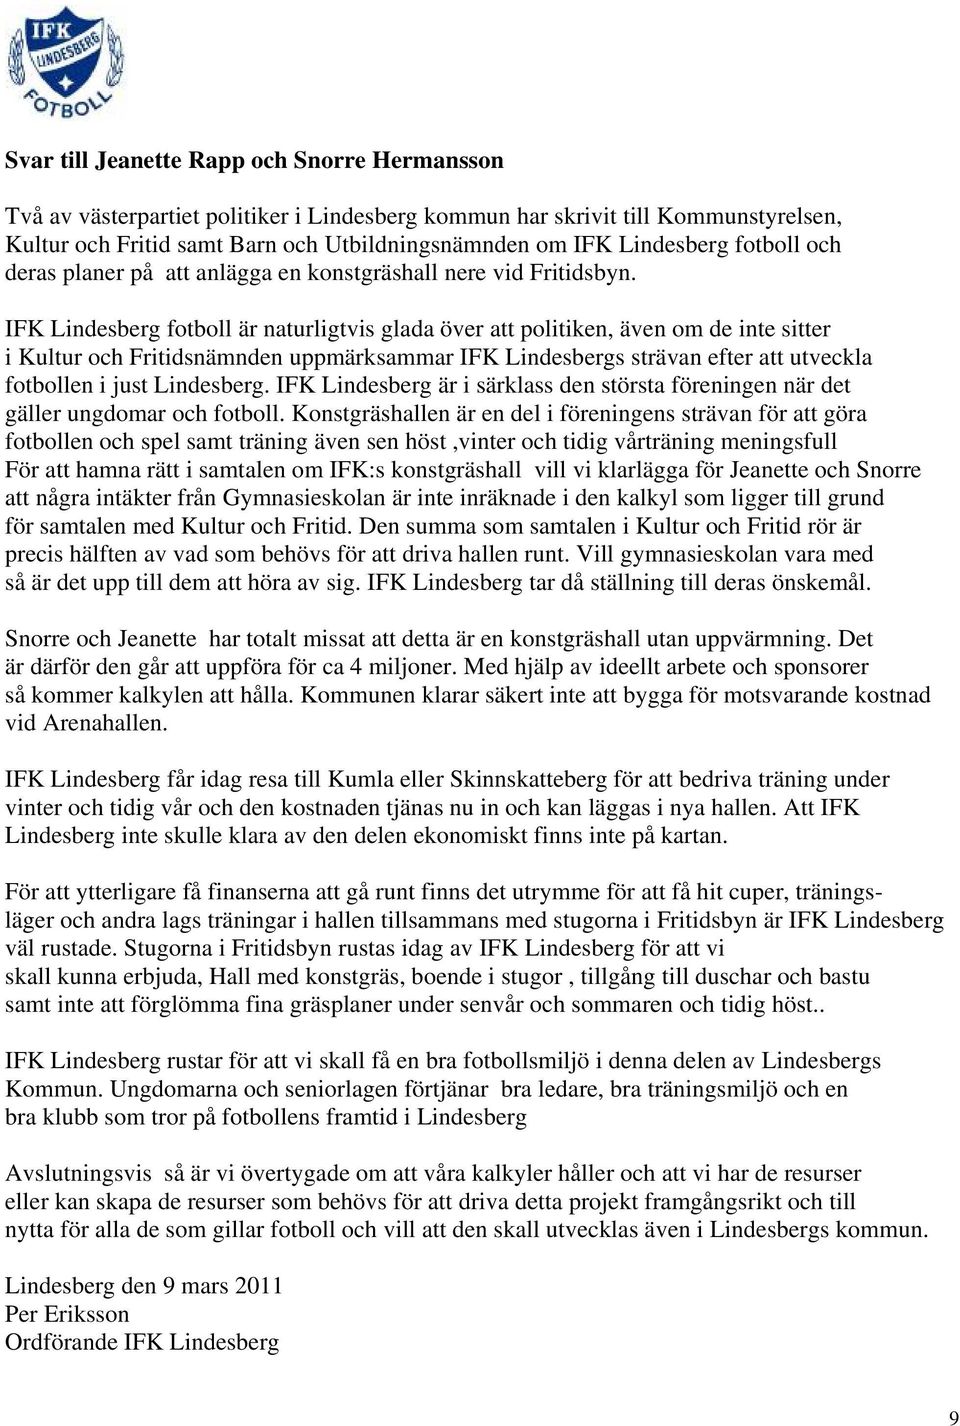 IFK Lindesberg fotboll är naturligtvis glada över att politiken, även om de inte sitter i Kultur och Fritidsnämnden uppmärksammar IFK Lindesbergs strävan efter att utveckla fotbollen i just